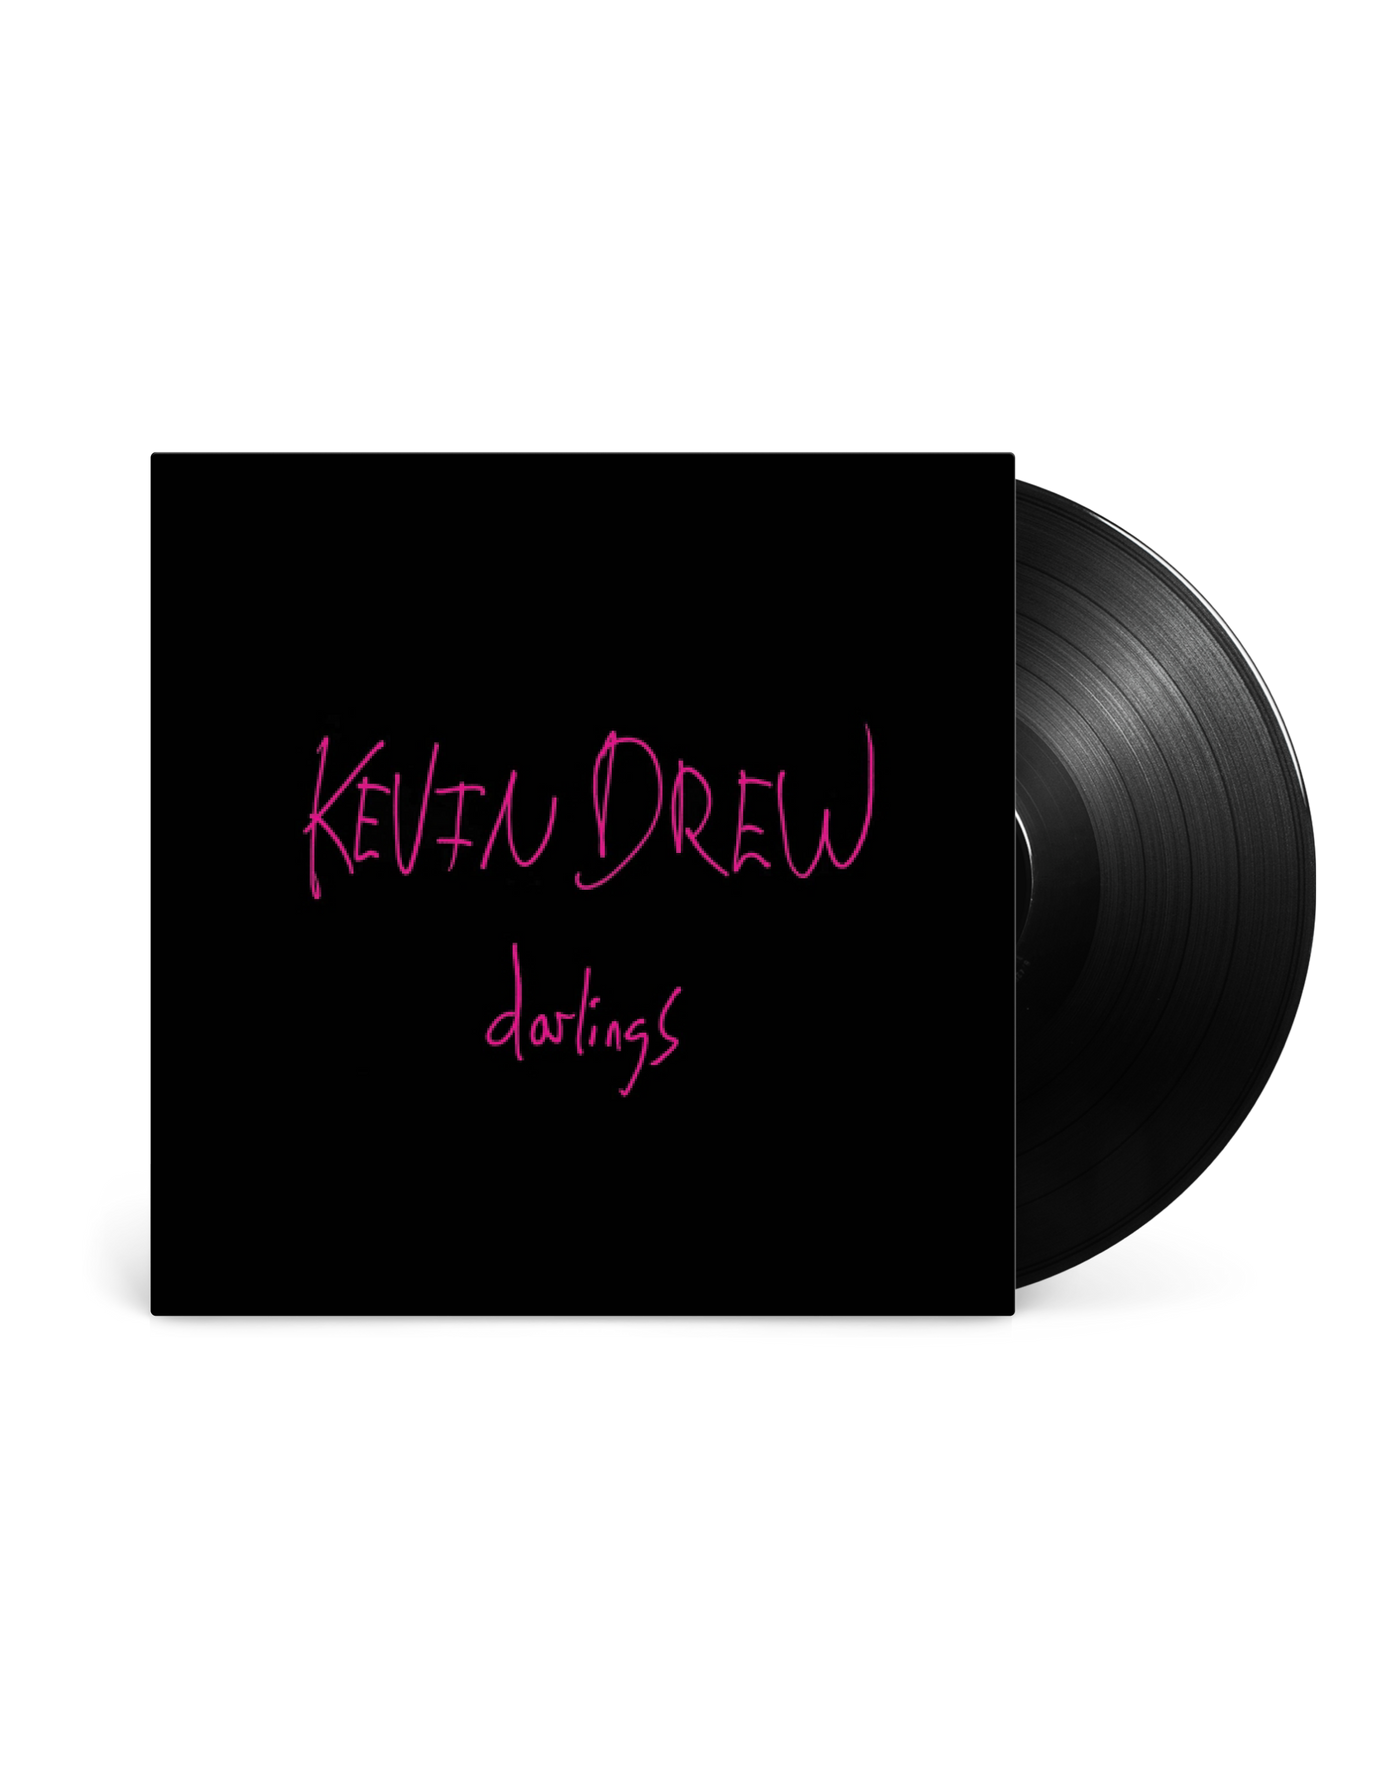 Vinilo 12” - Kevin Drew Darlings